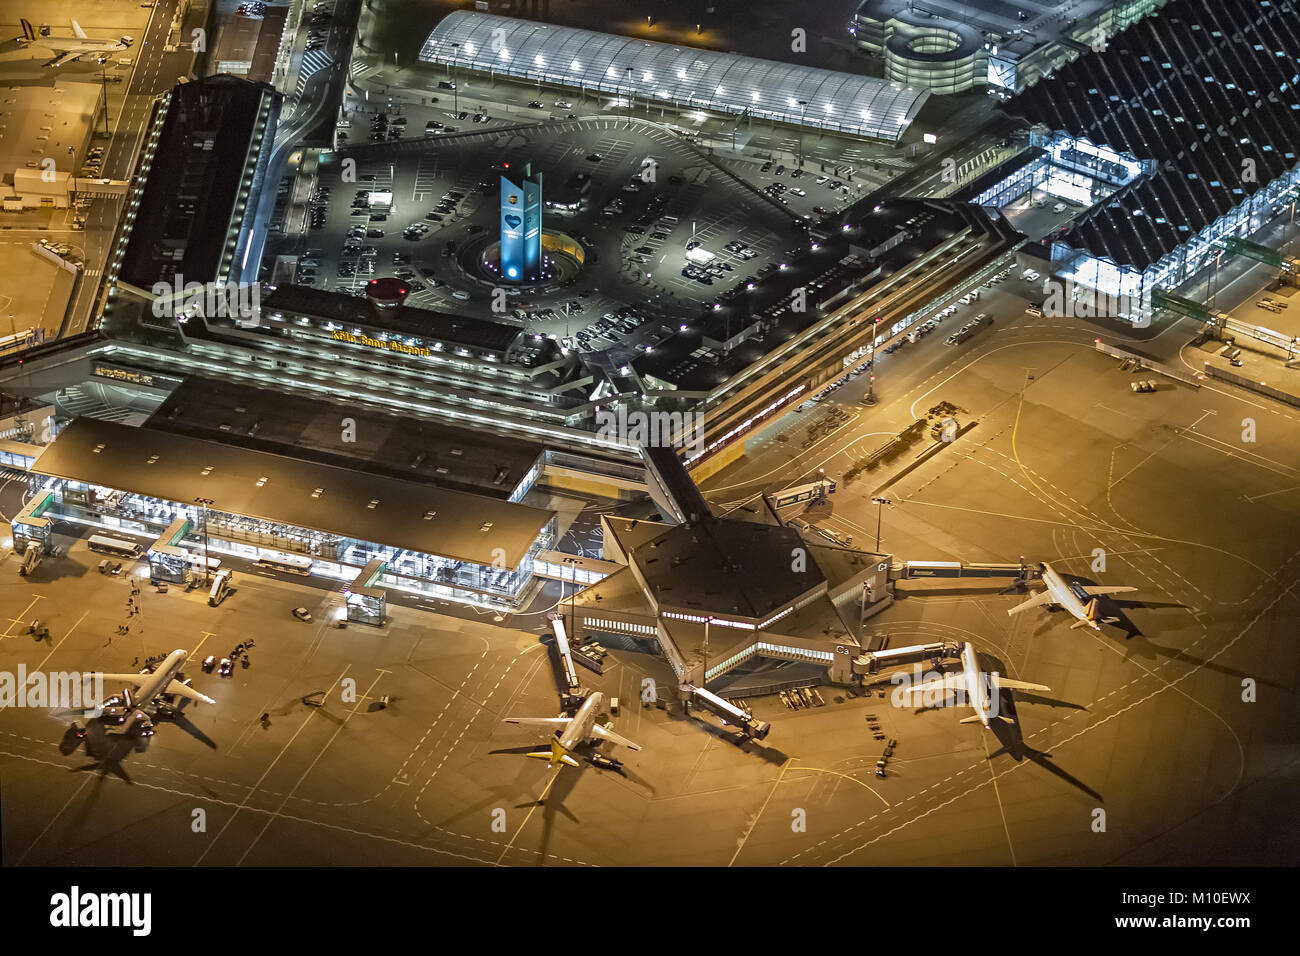 Vue aérienne, l'aéroport de Cologne / Bonn - Konrad Adenauer, l'aéroport de Cologne-Bonn, d'aéronefs à l'arrivée les doigts, tablier, tablier, Terminal de l'aéroport illuminé Banque D'Images